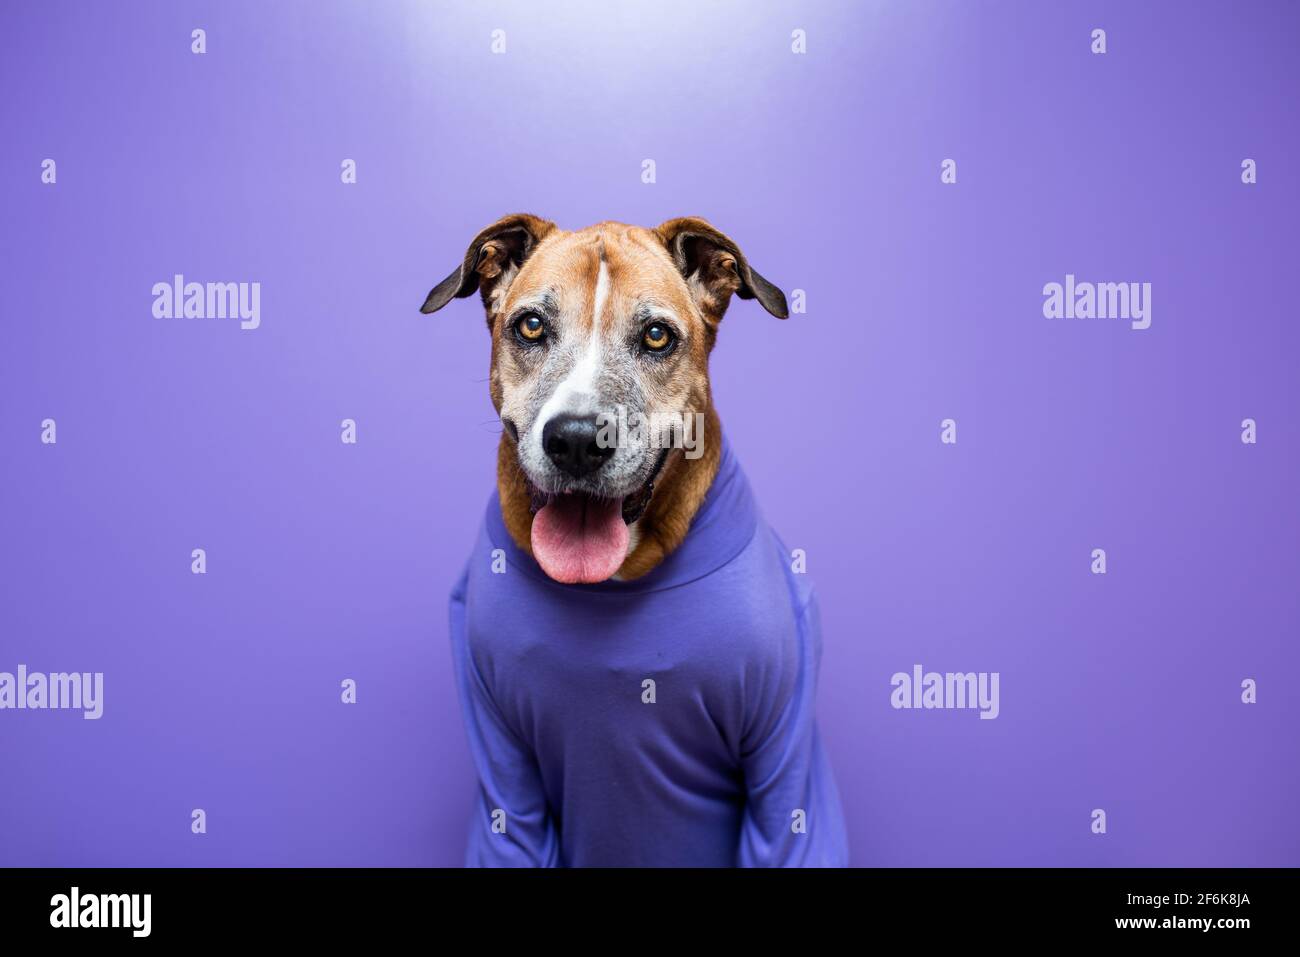 Chien dans un chandail, chien au travail avec un mur violet. Concept animaux de compagnie au travail, animaux de compagnie travaillant comme les gens. Banque D'Images